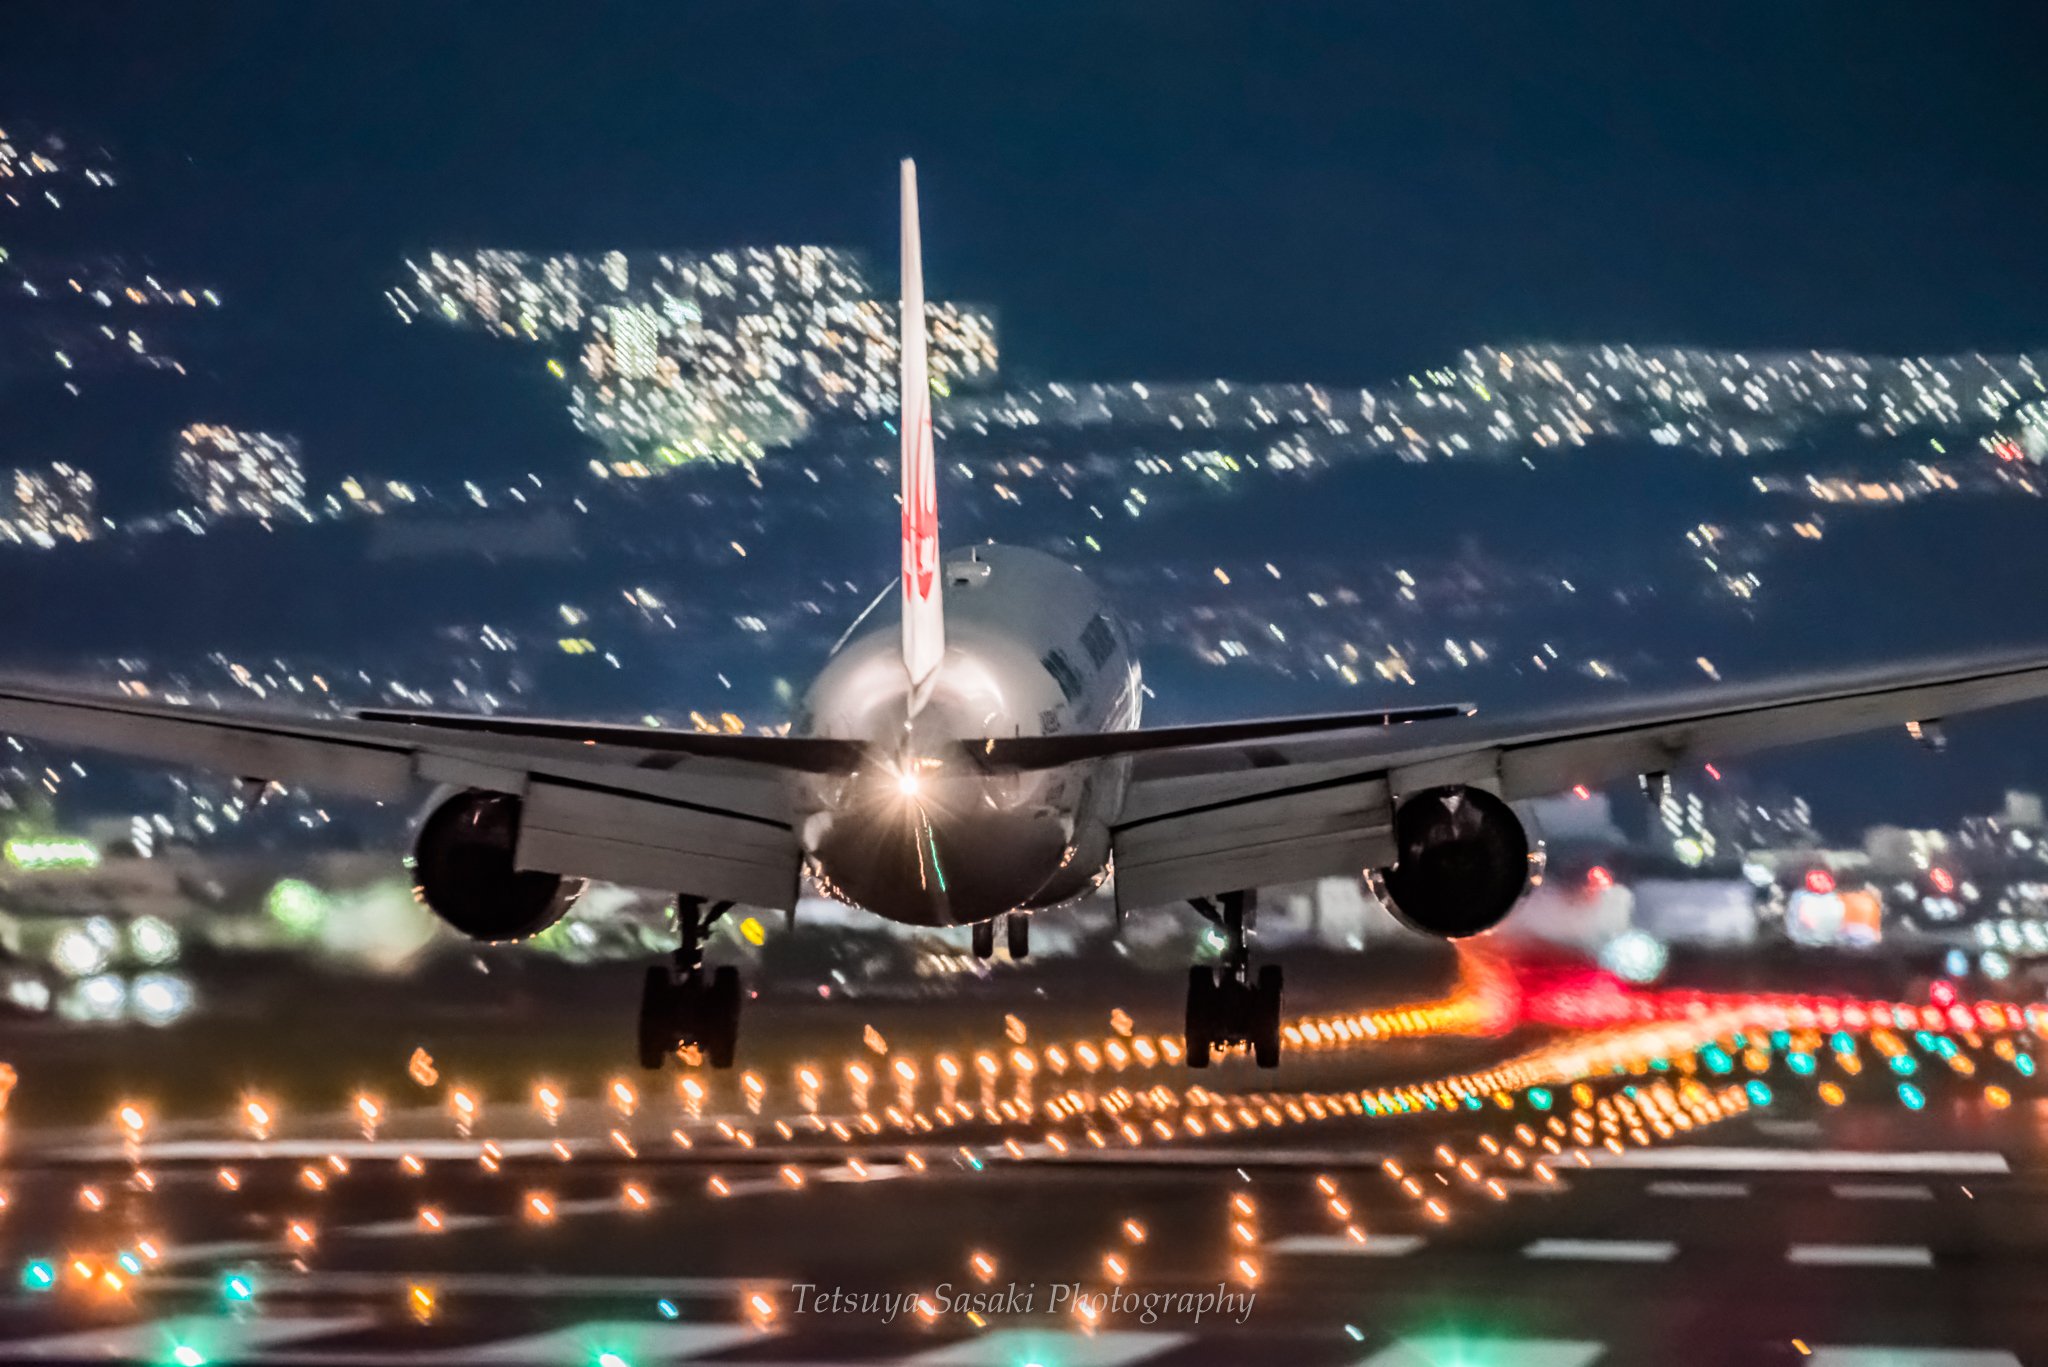 てつ 佐々木徹也 この１枚は 割と綺麗に撮れたかな ただいま プチ出張で移動中 伊丹空港 大阪国際空港 Itm Rjoo 千里川 飛行機 空 夜景 Jal ファインダー越しの私の世界 写真好き